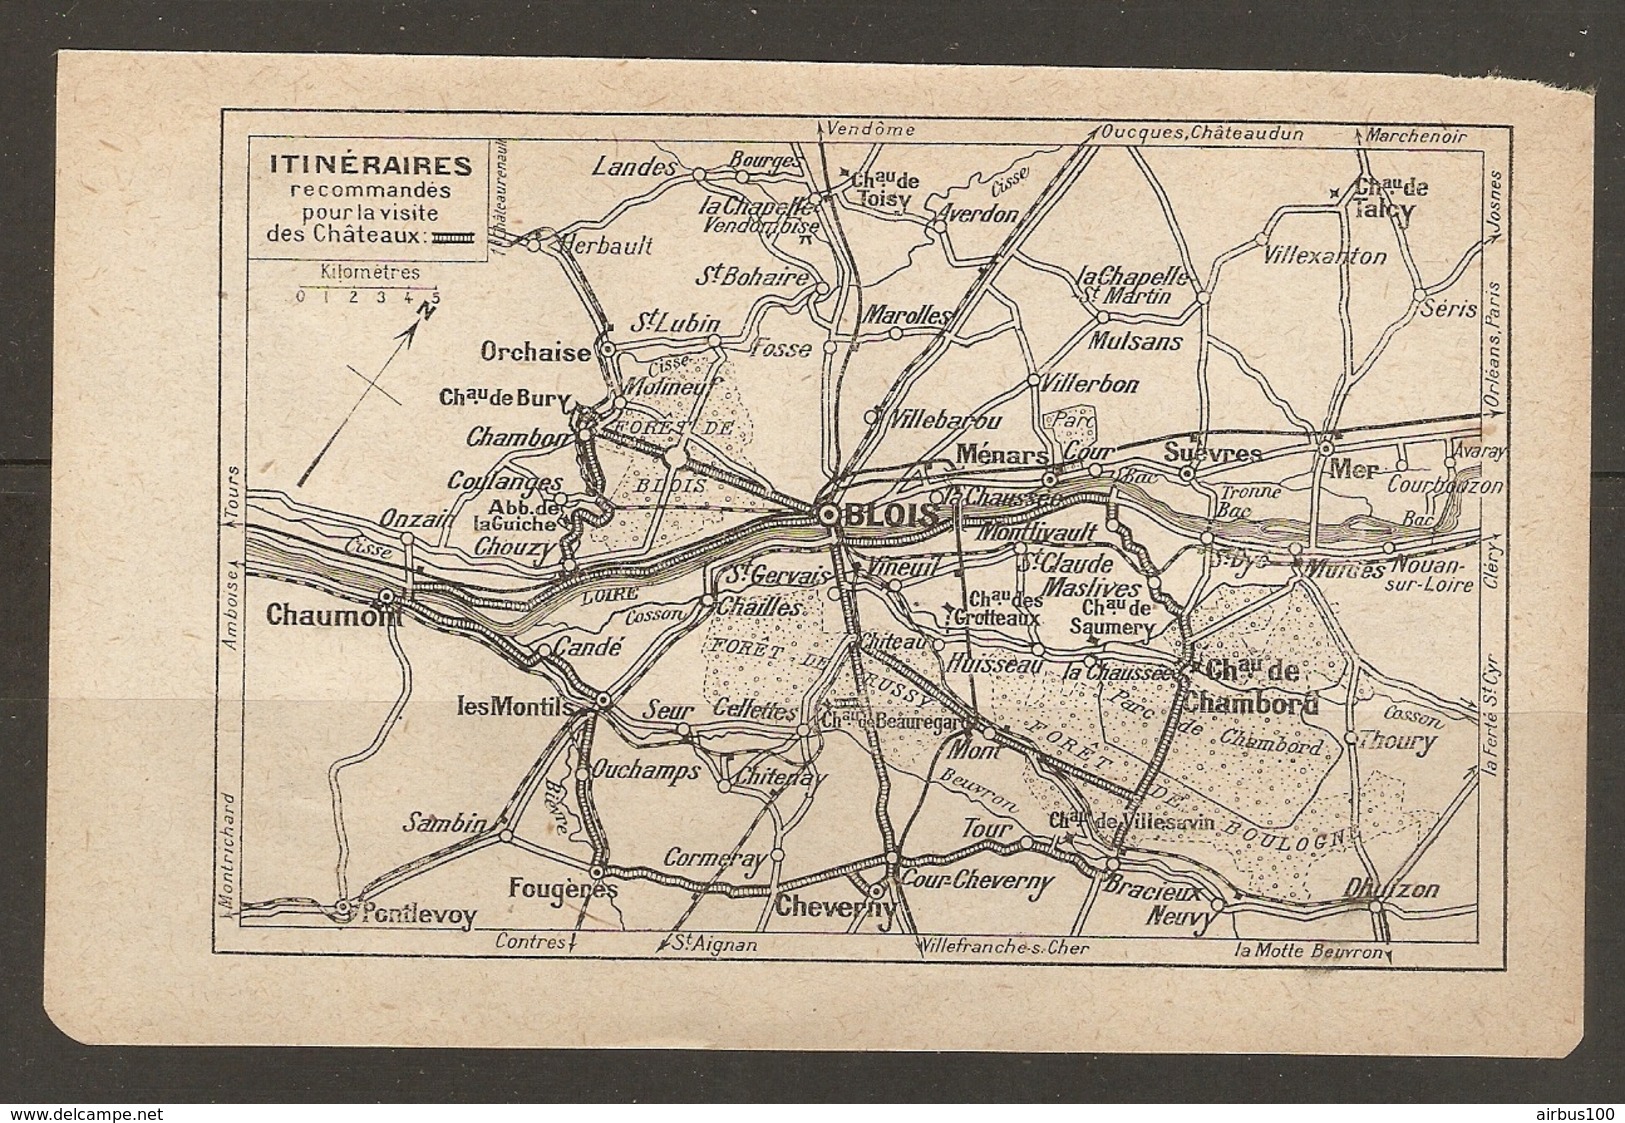 CARTE PLAN 1921 - ITINERAIRES RECOMMANDES POUR LA VISITE Des CHATEAUX CHAUMONT BLOIS CHAMBORD ORCHAISE MENARS Les MONTIL - Topographical Maps